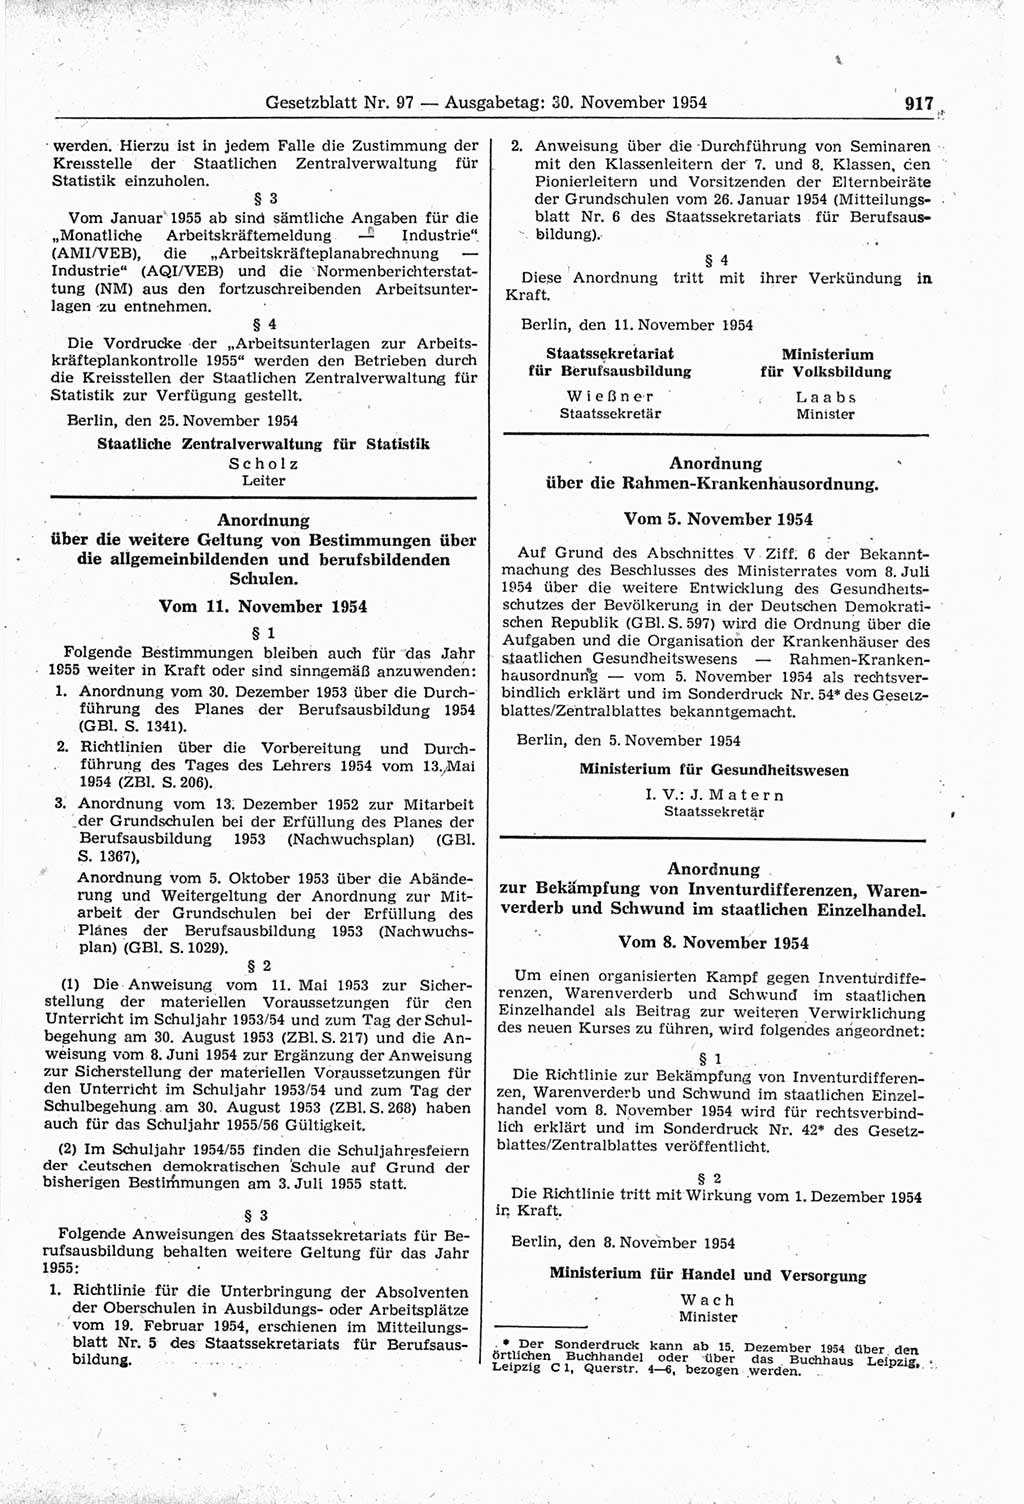 Gesetzblatt (GBl.) der Deutschen Demokratischen Republik (DDR) 1954, Seite 917 (GBl. DDR 1954, S. 917)